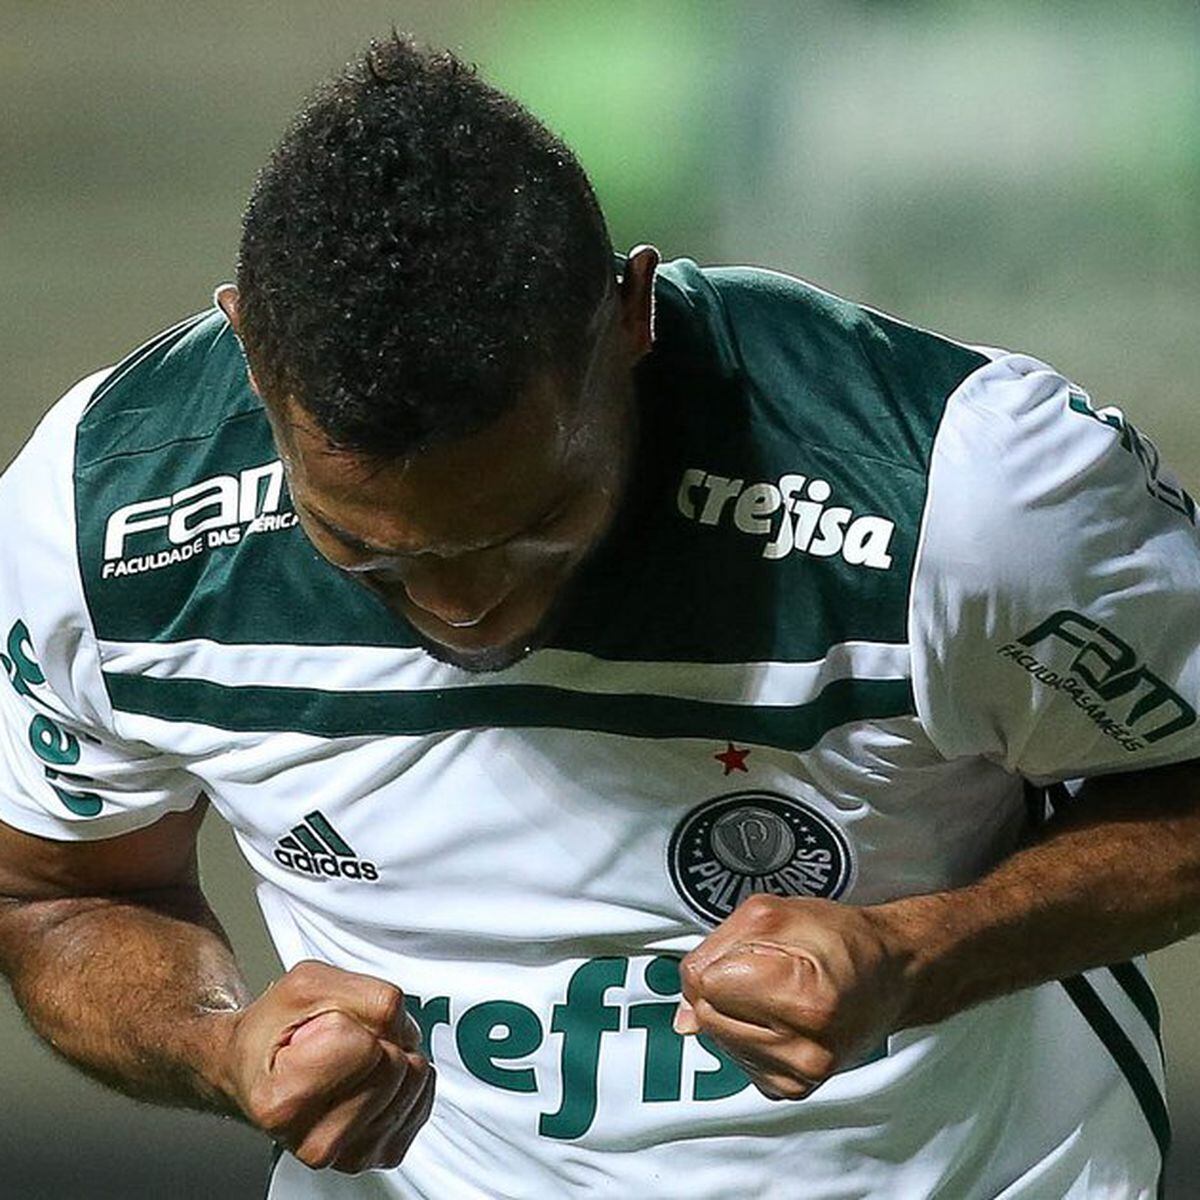 Jornalistas da Globo apostam em triunfo do Bahia contra o Fluminense